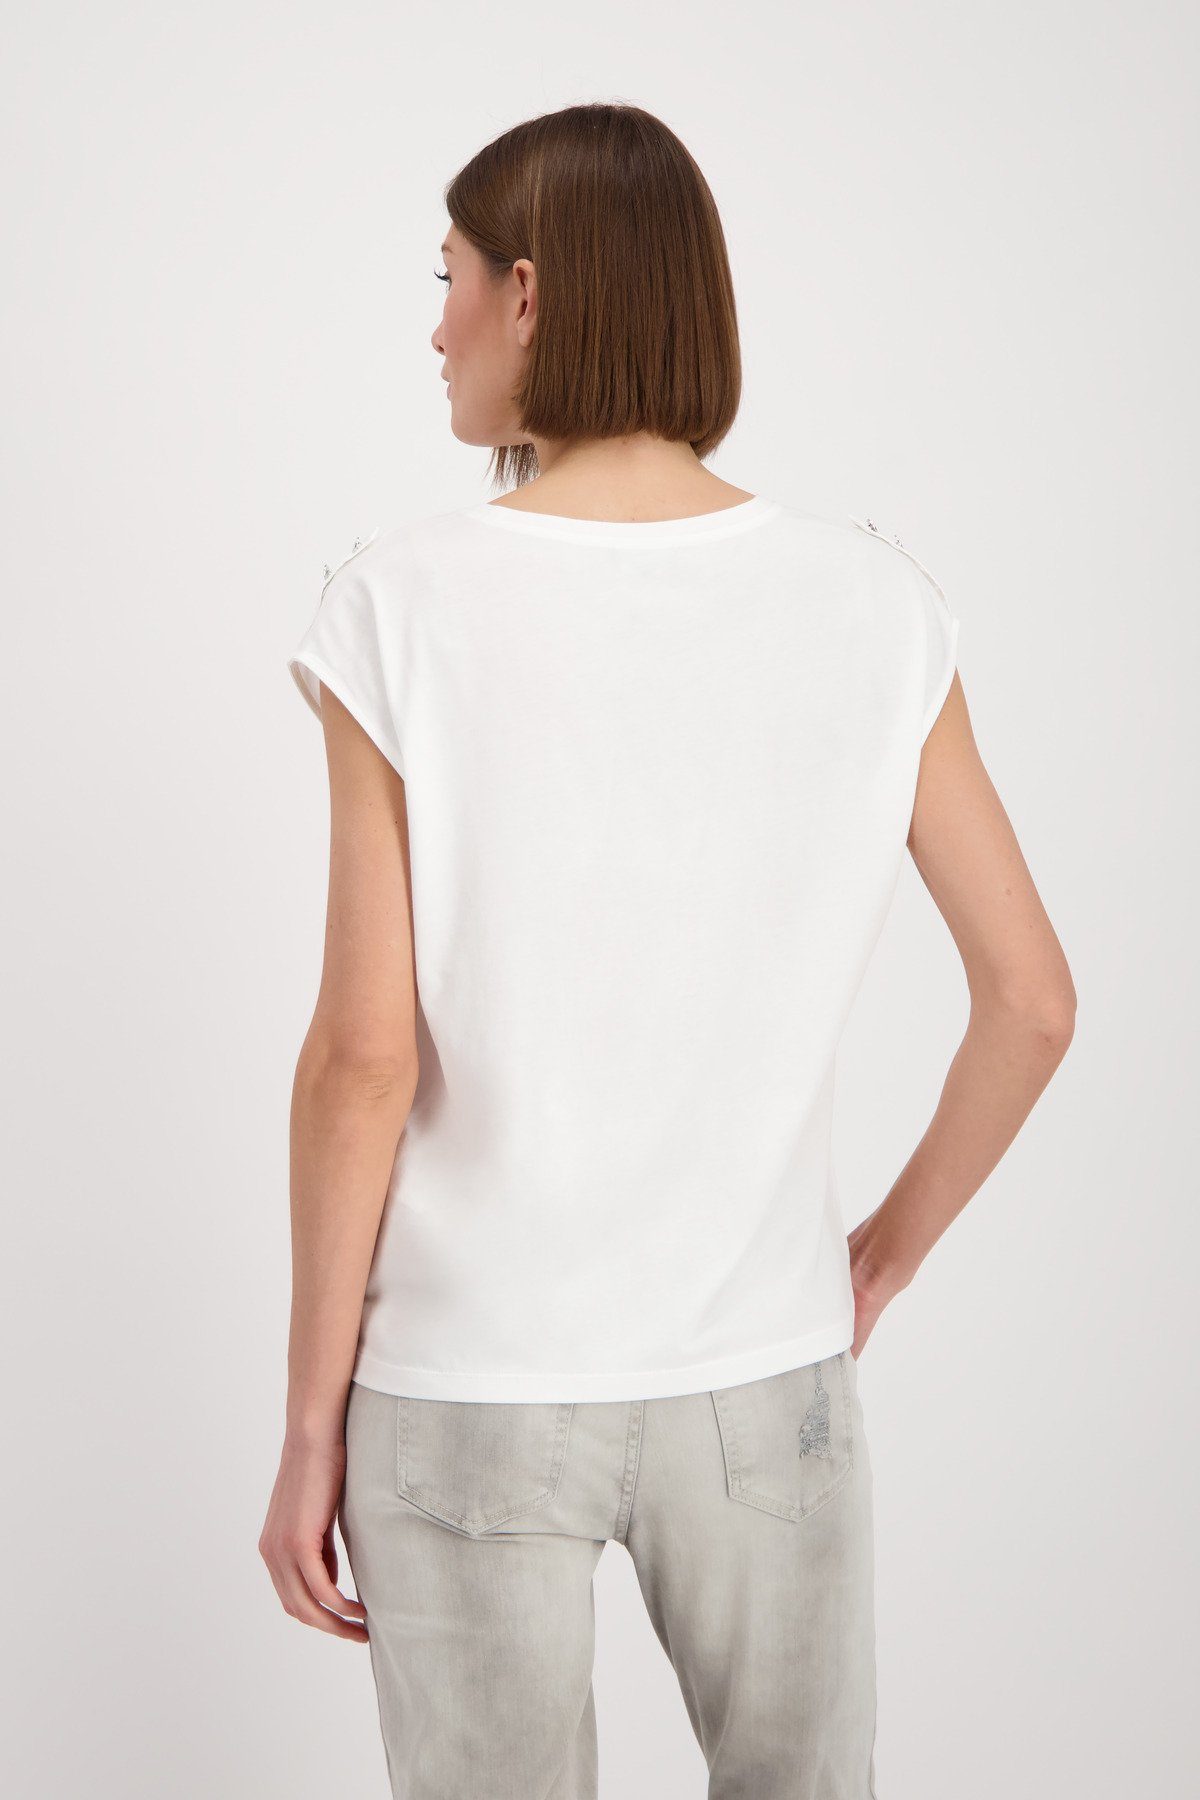 Monari T-Shirt off-white 102